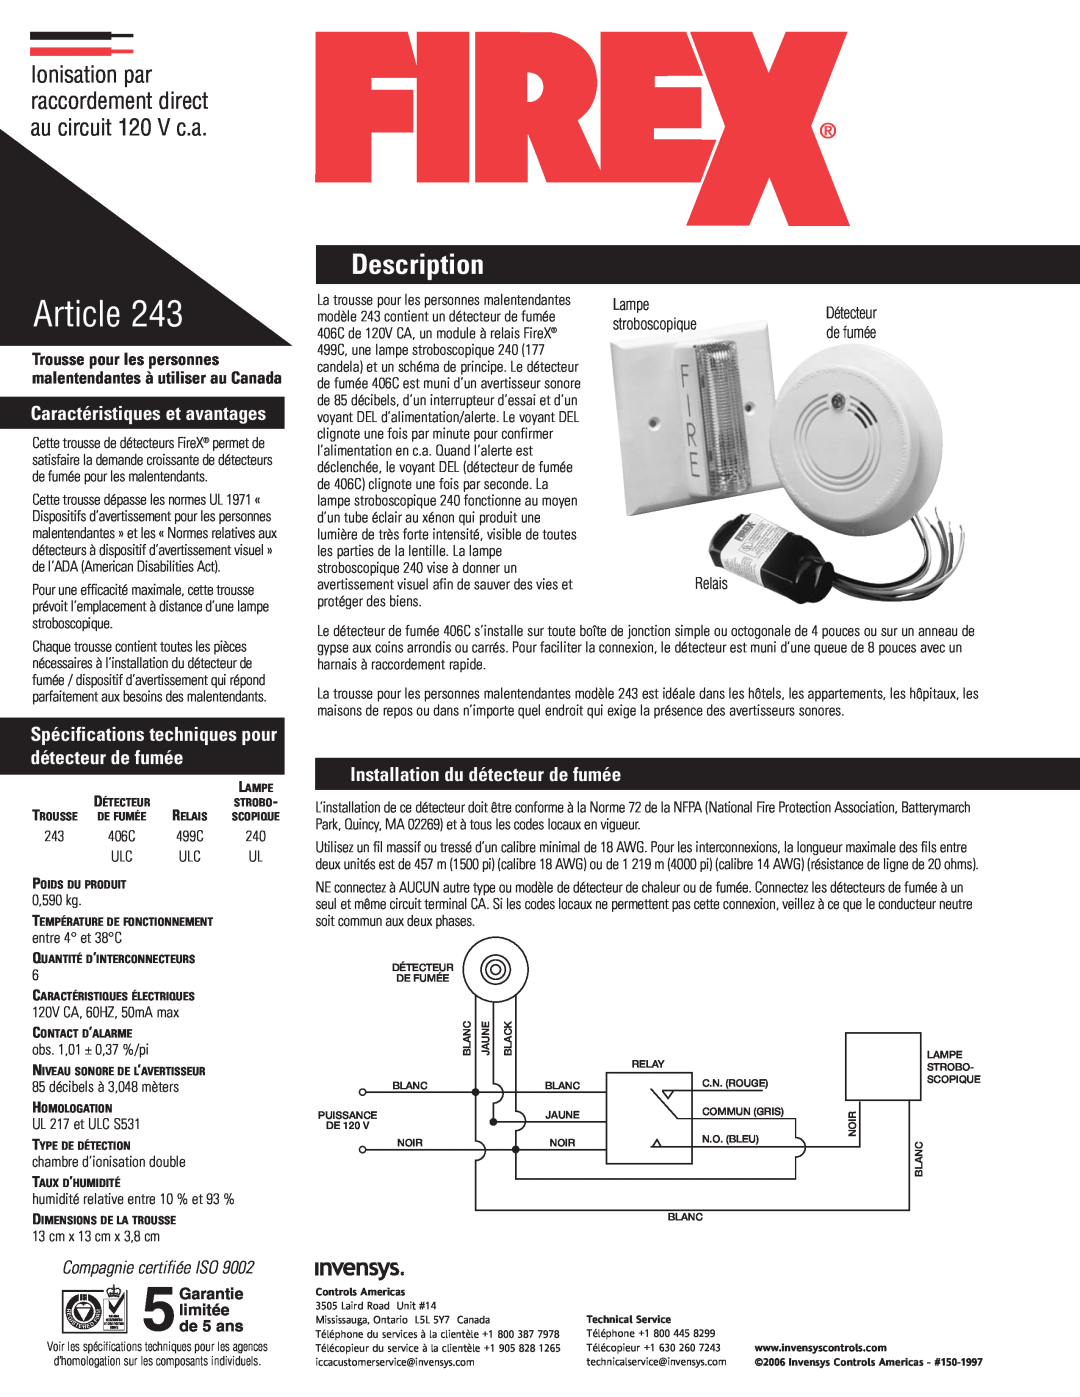 Firex 243 Caractéristiques et avantages, Spécifications techniques pour détecteur de fumée, Compagnie certifiée ISO, Lampe 